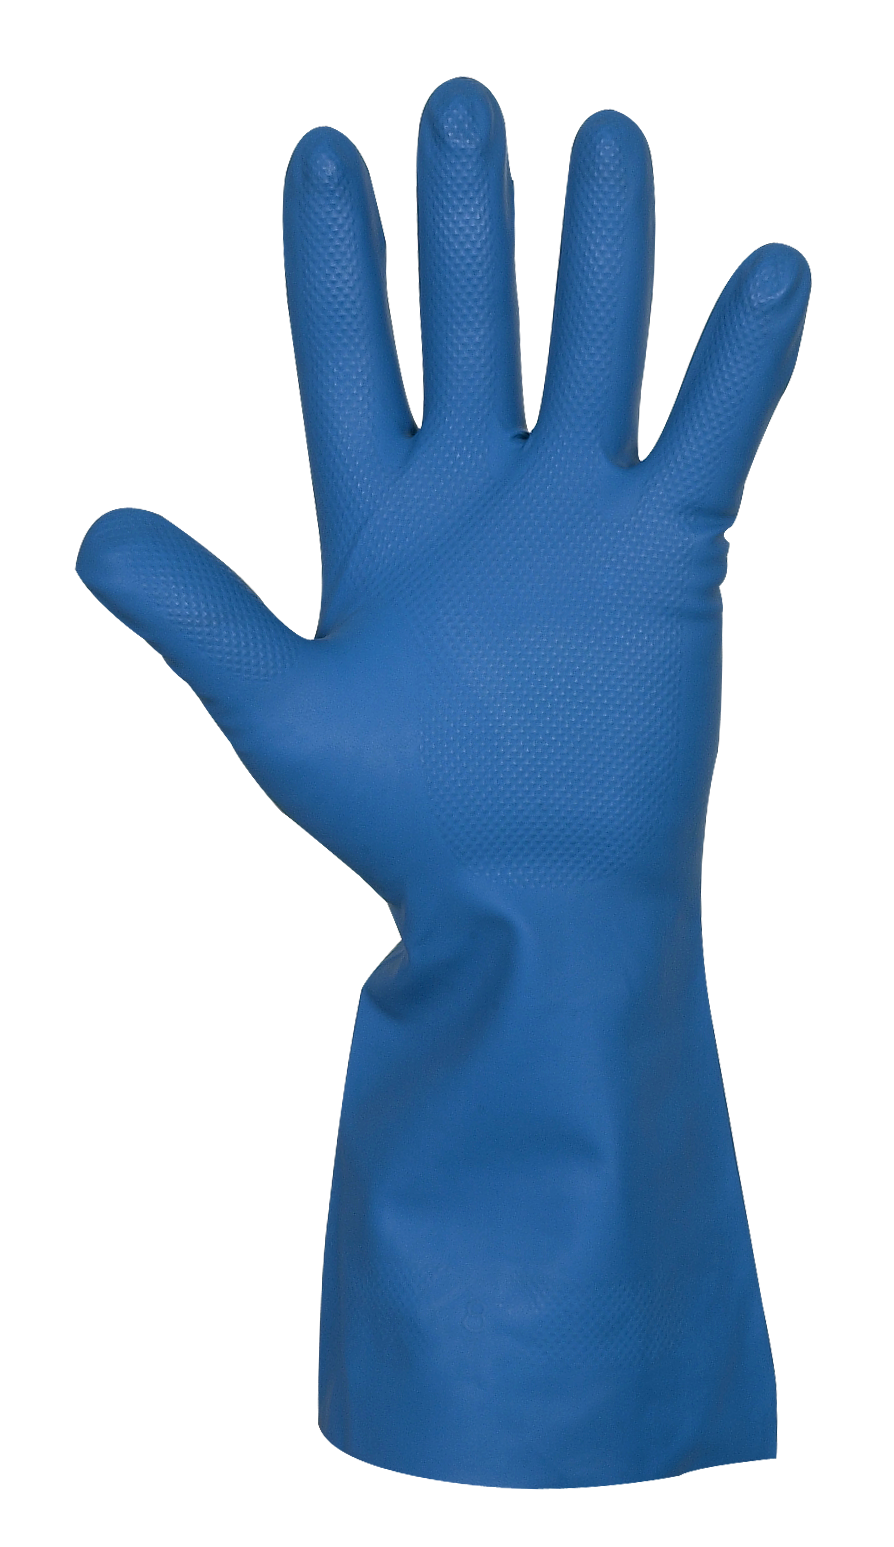 Reinigungs- und Schutzhandschuh Nitril Gr. M, innen Samt, blau, medium